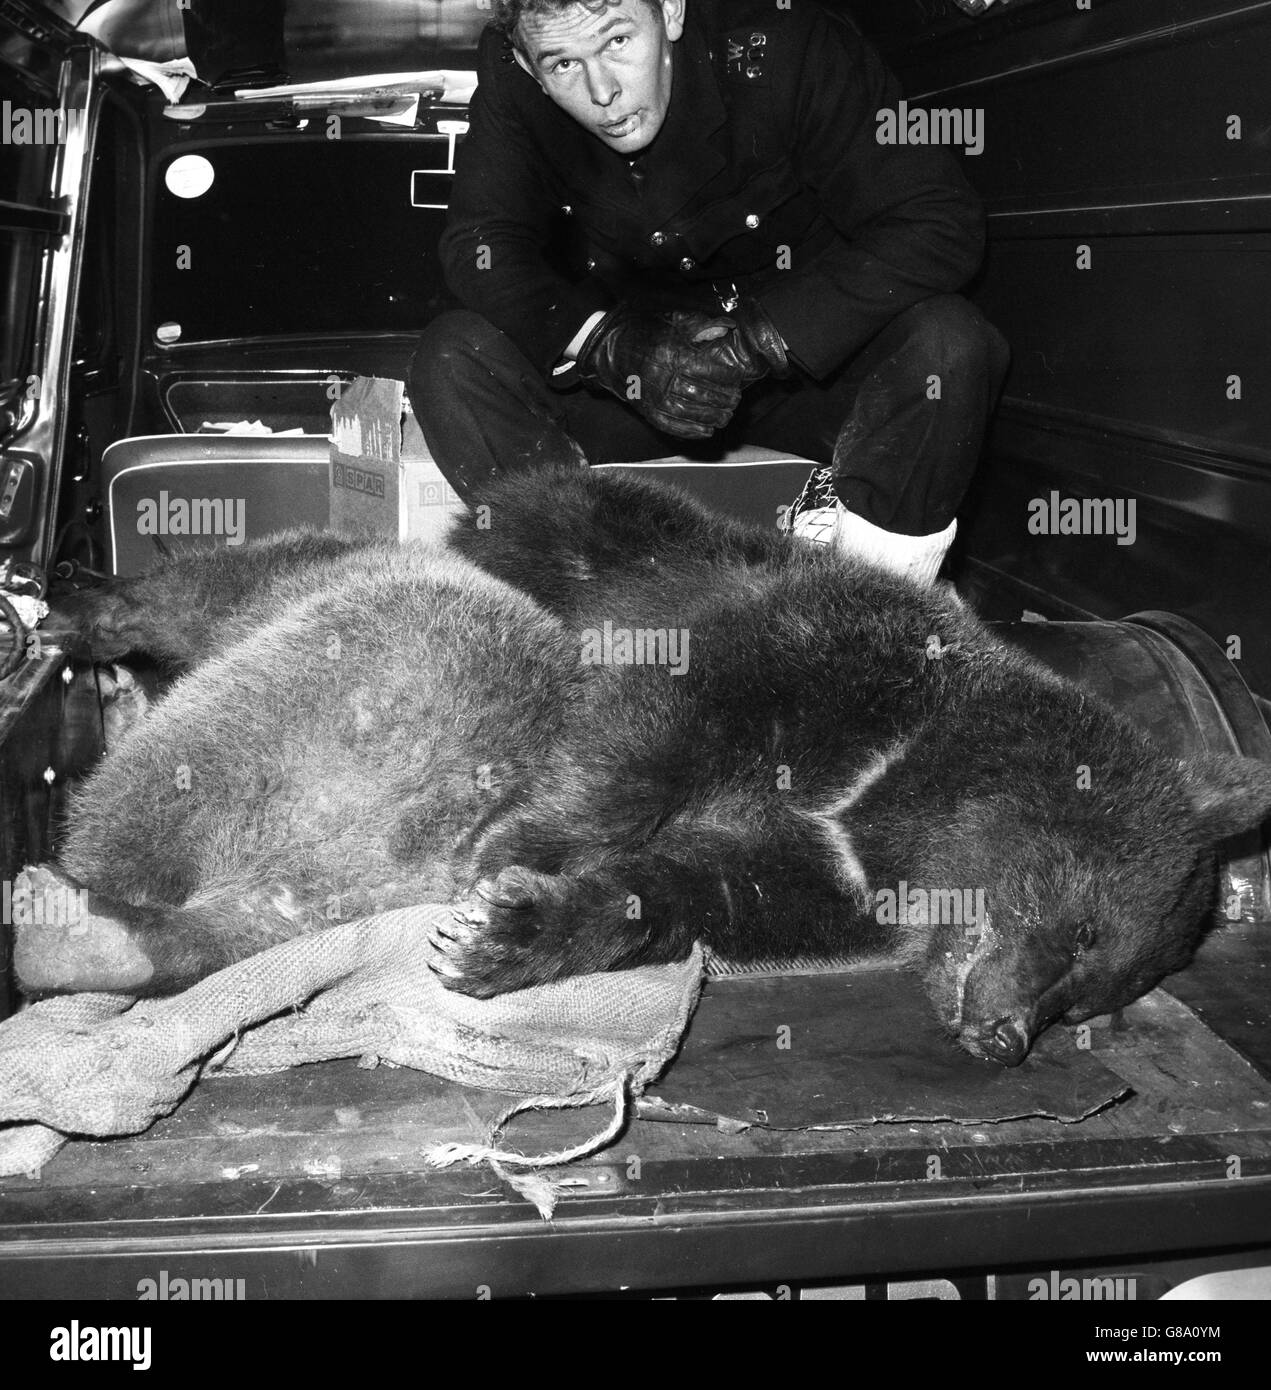 Les deux ours russes qui se sont échappés d'un zoo de Ryde, l'île de Wight, sont photographiés à l'arrière d'une camionnette après avoir été abattus avec des fléchettes anesthésiques. Dès que les ours sont somnolent, ils ont été emmenés dans un autre zoo de Sandown. Banque D'Images